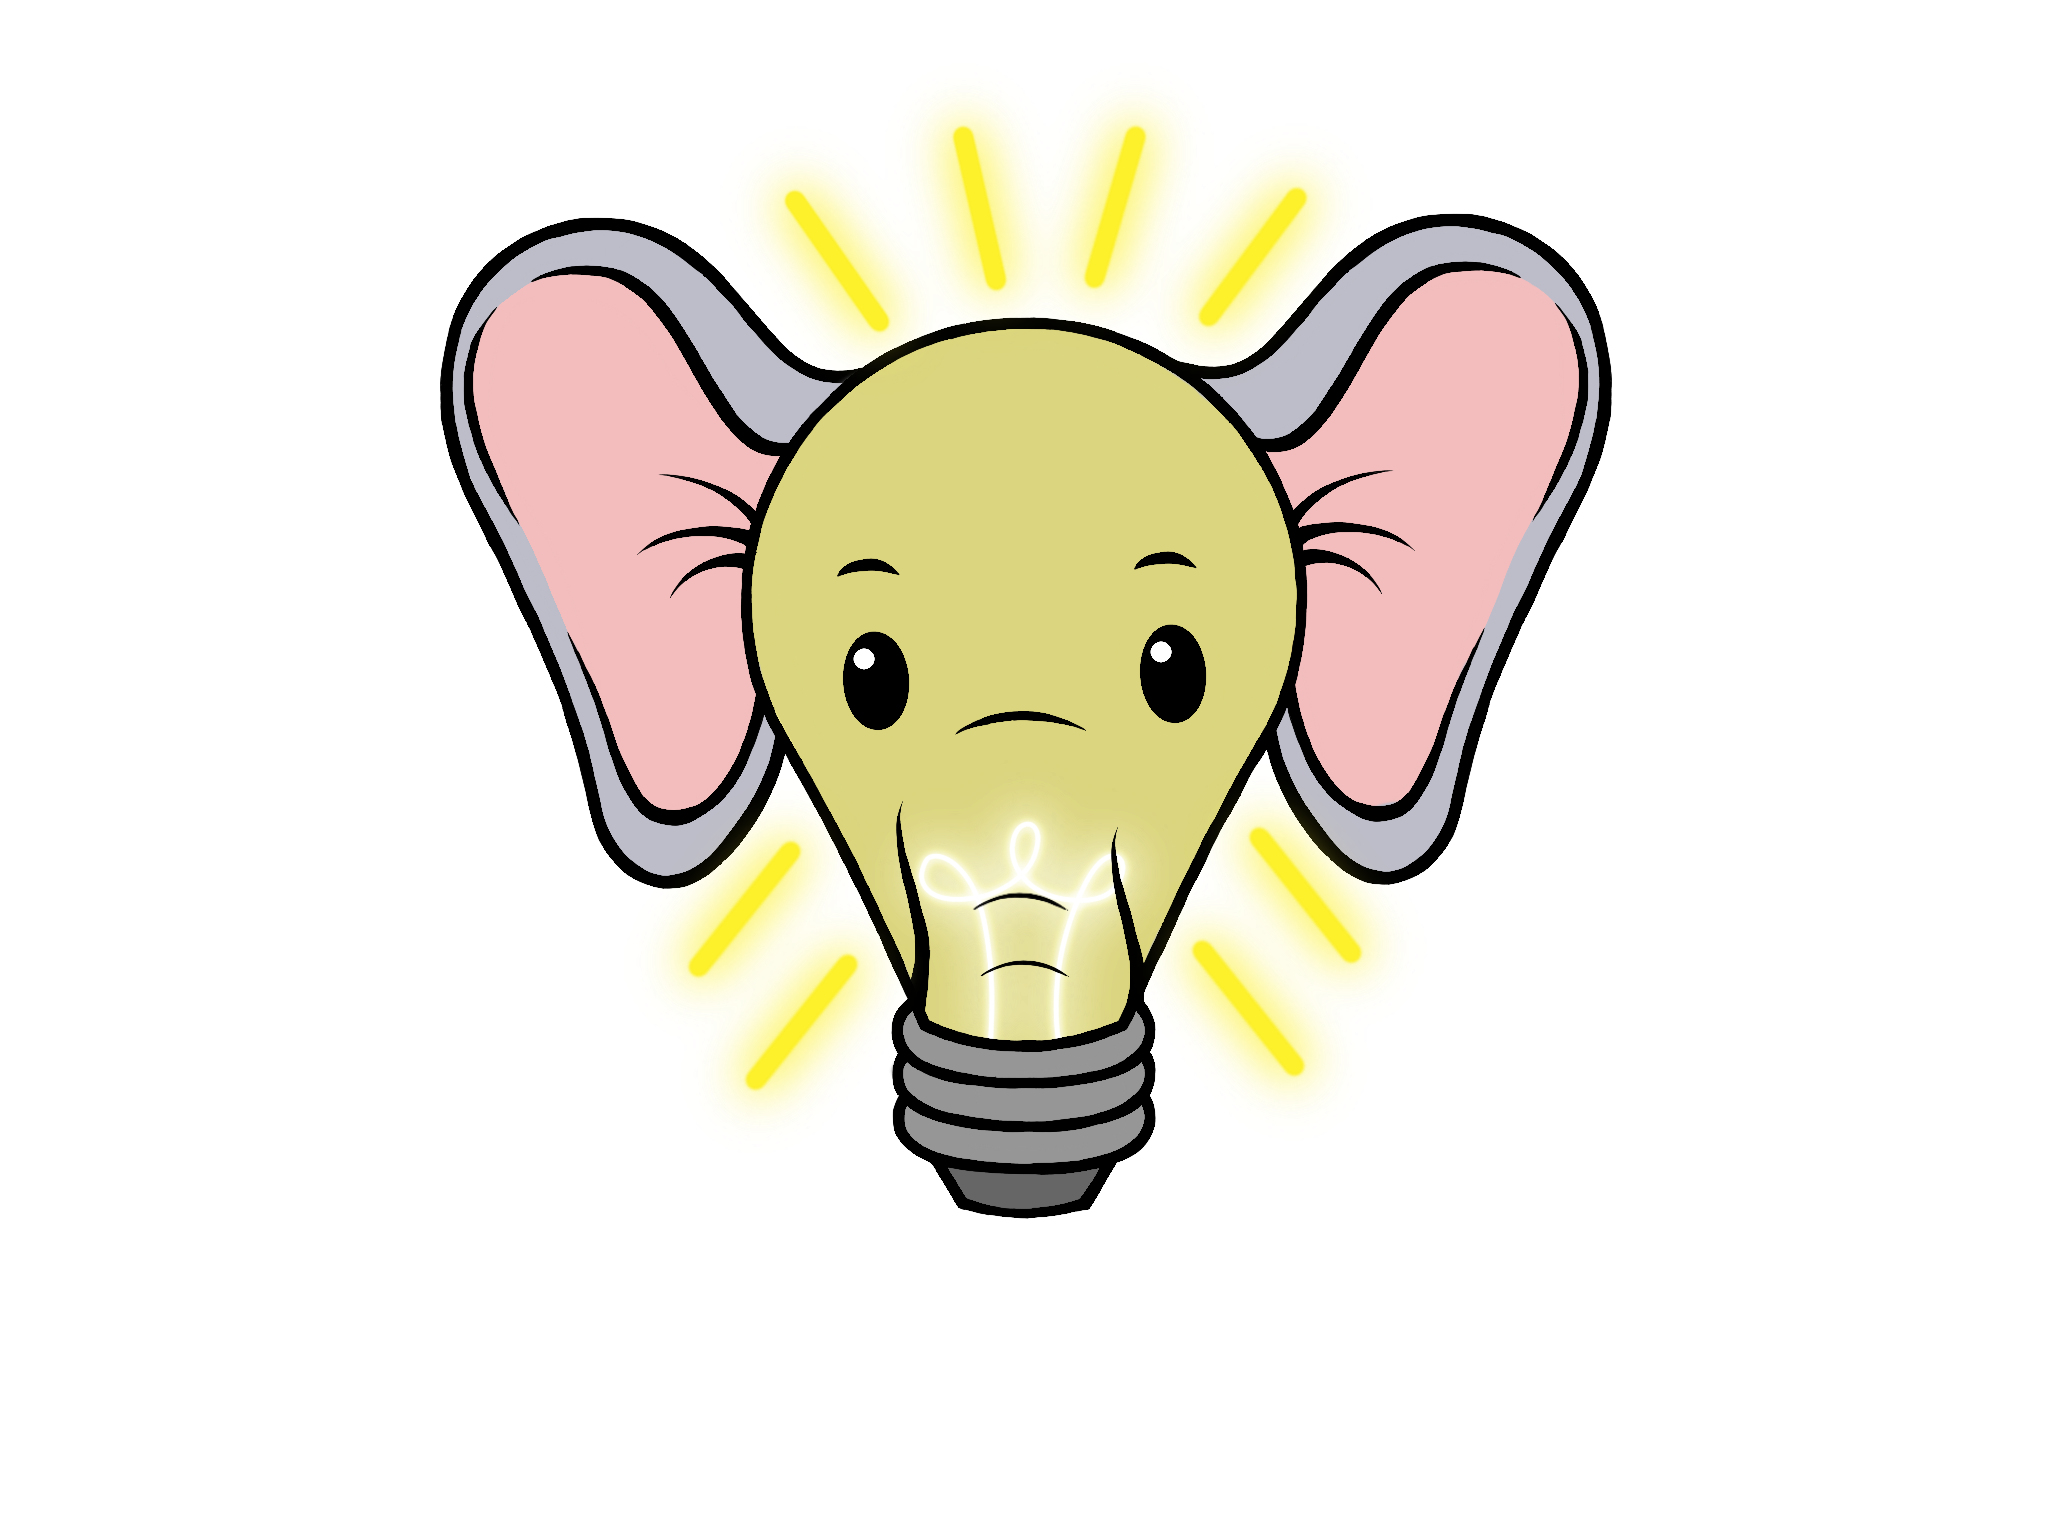 Elephant of an idea